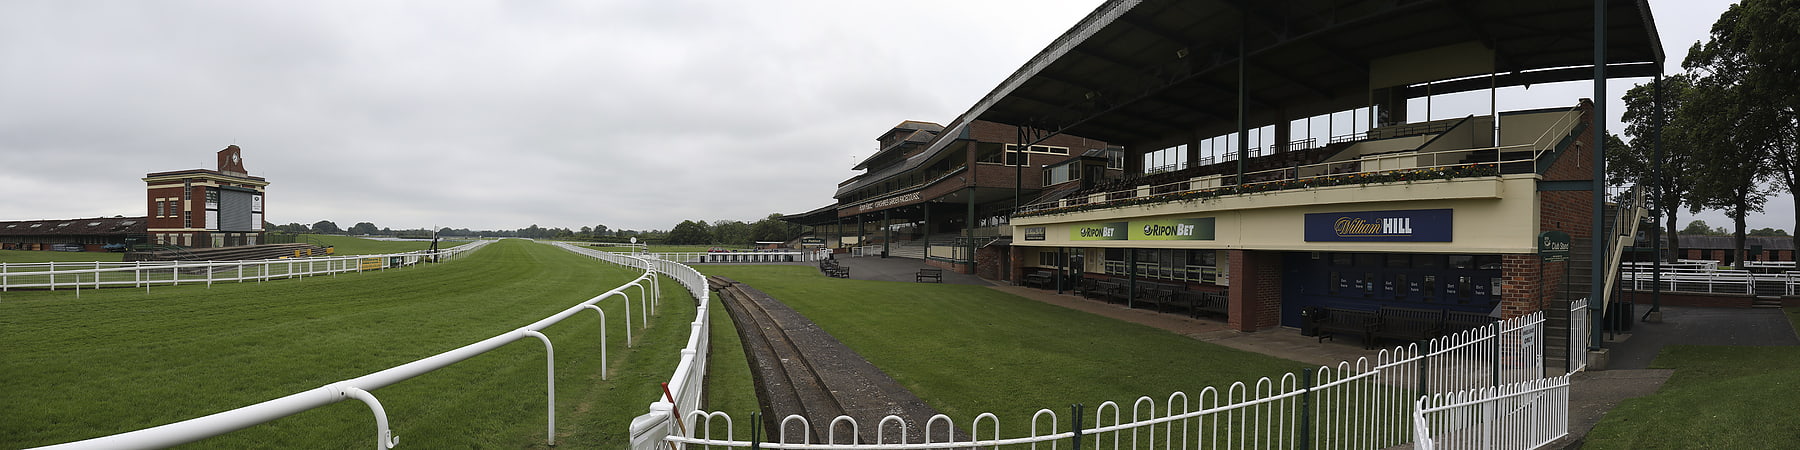 Racecourse in England